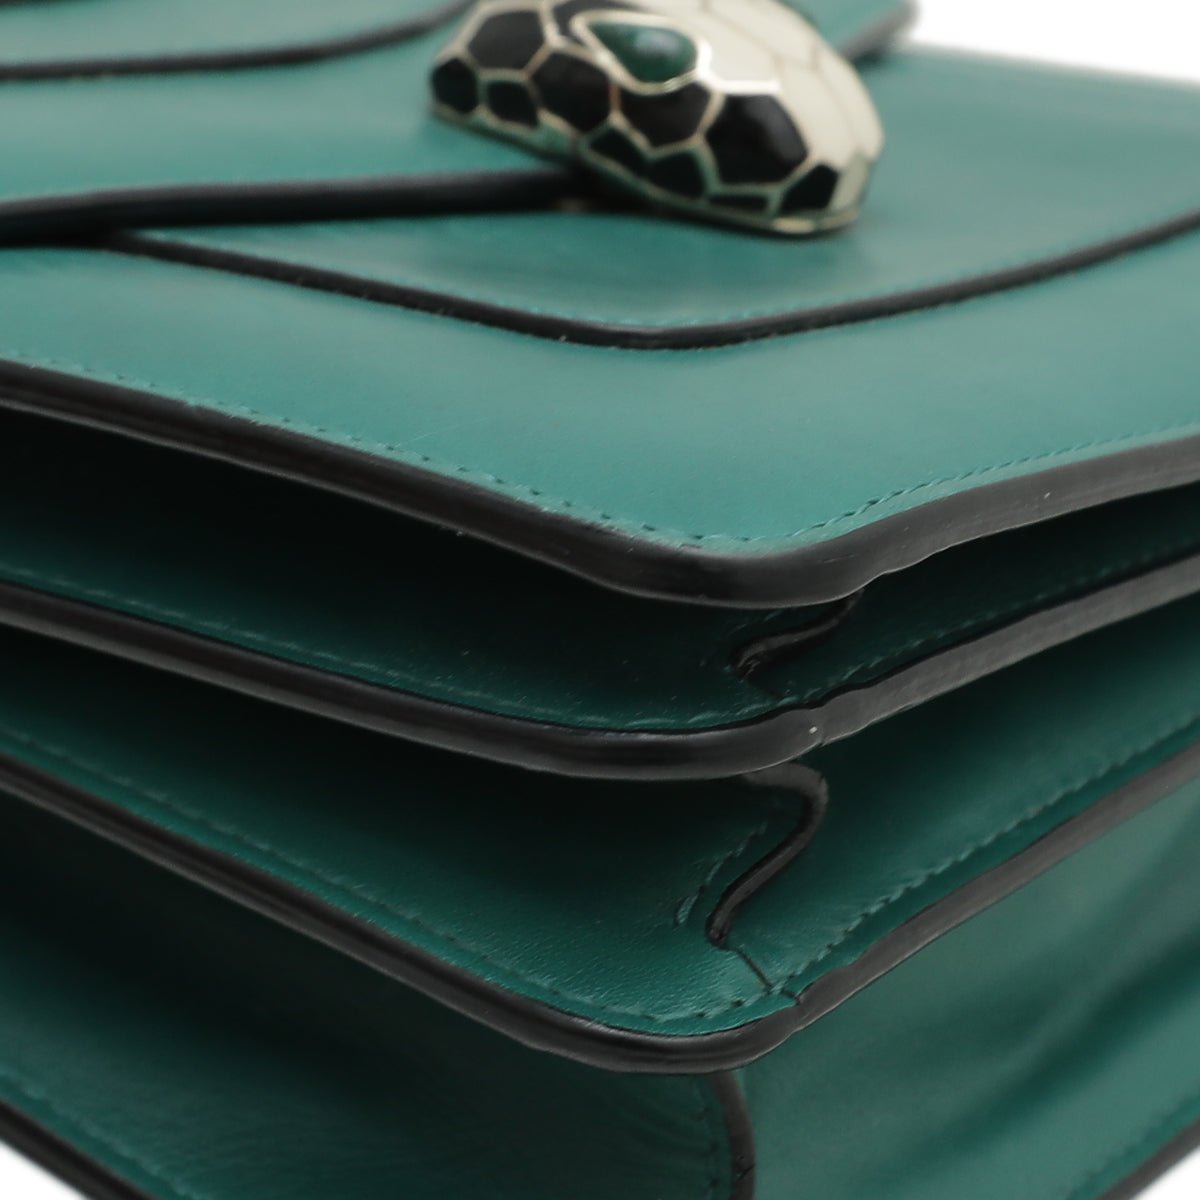 Bvlgari Green Serpenti Forever Top Handle Bag – The Closet